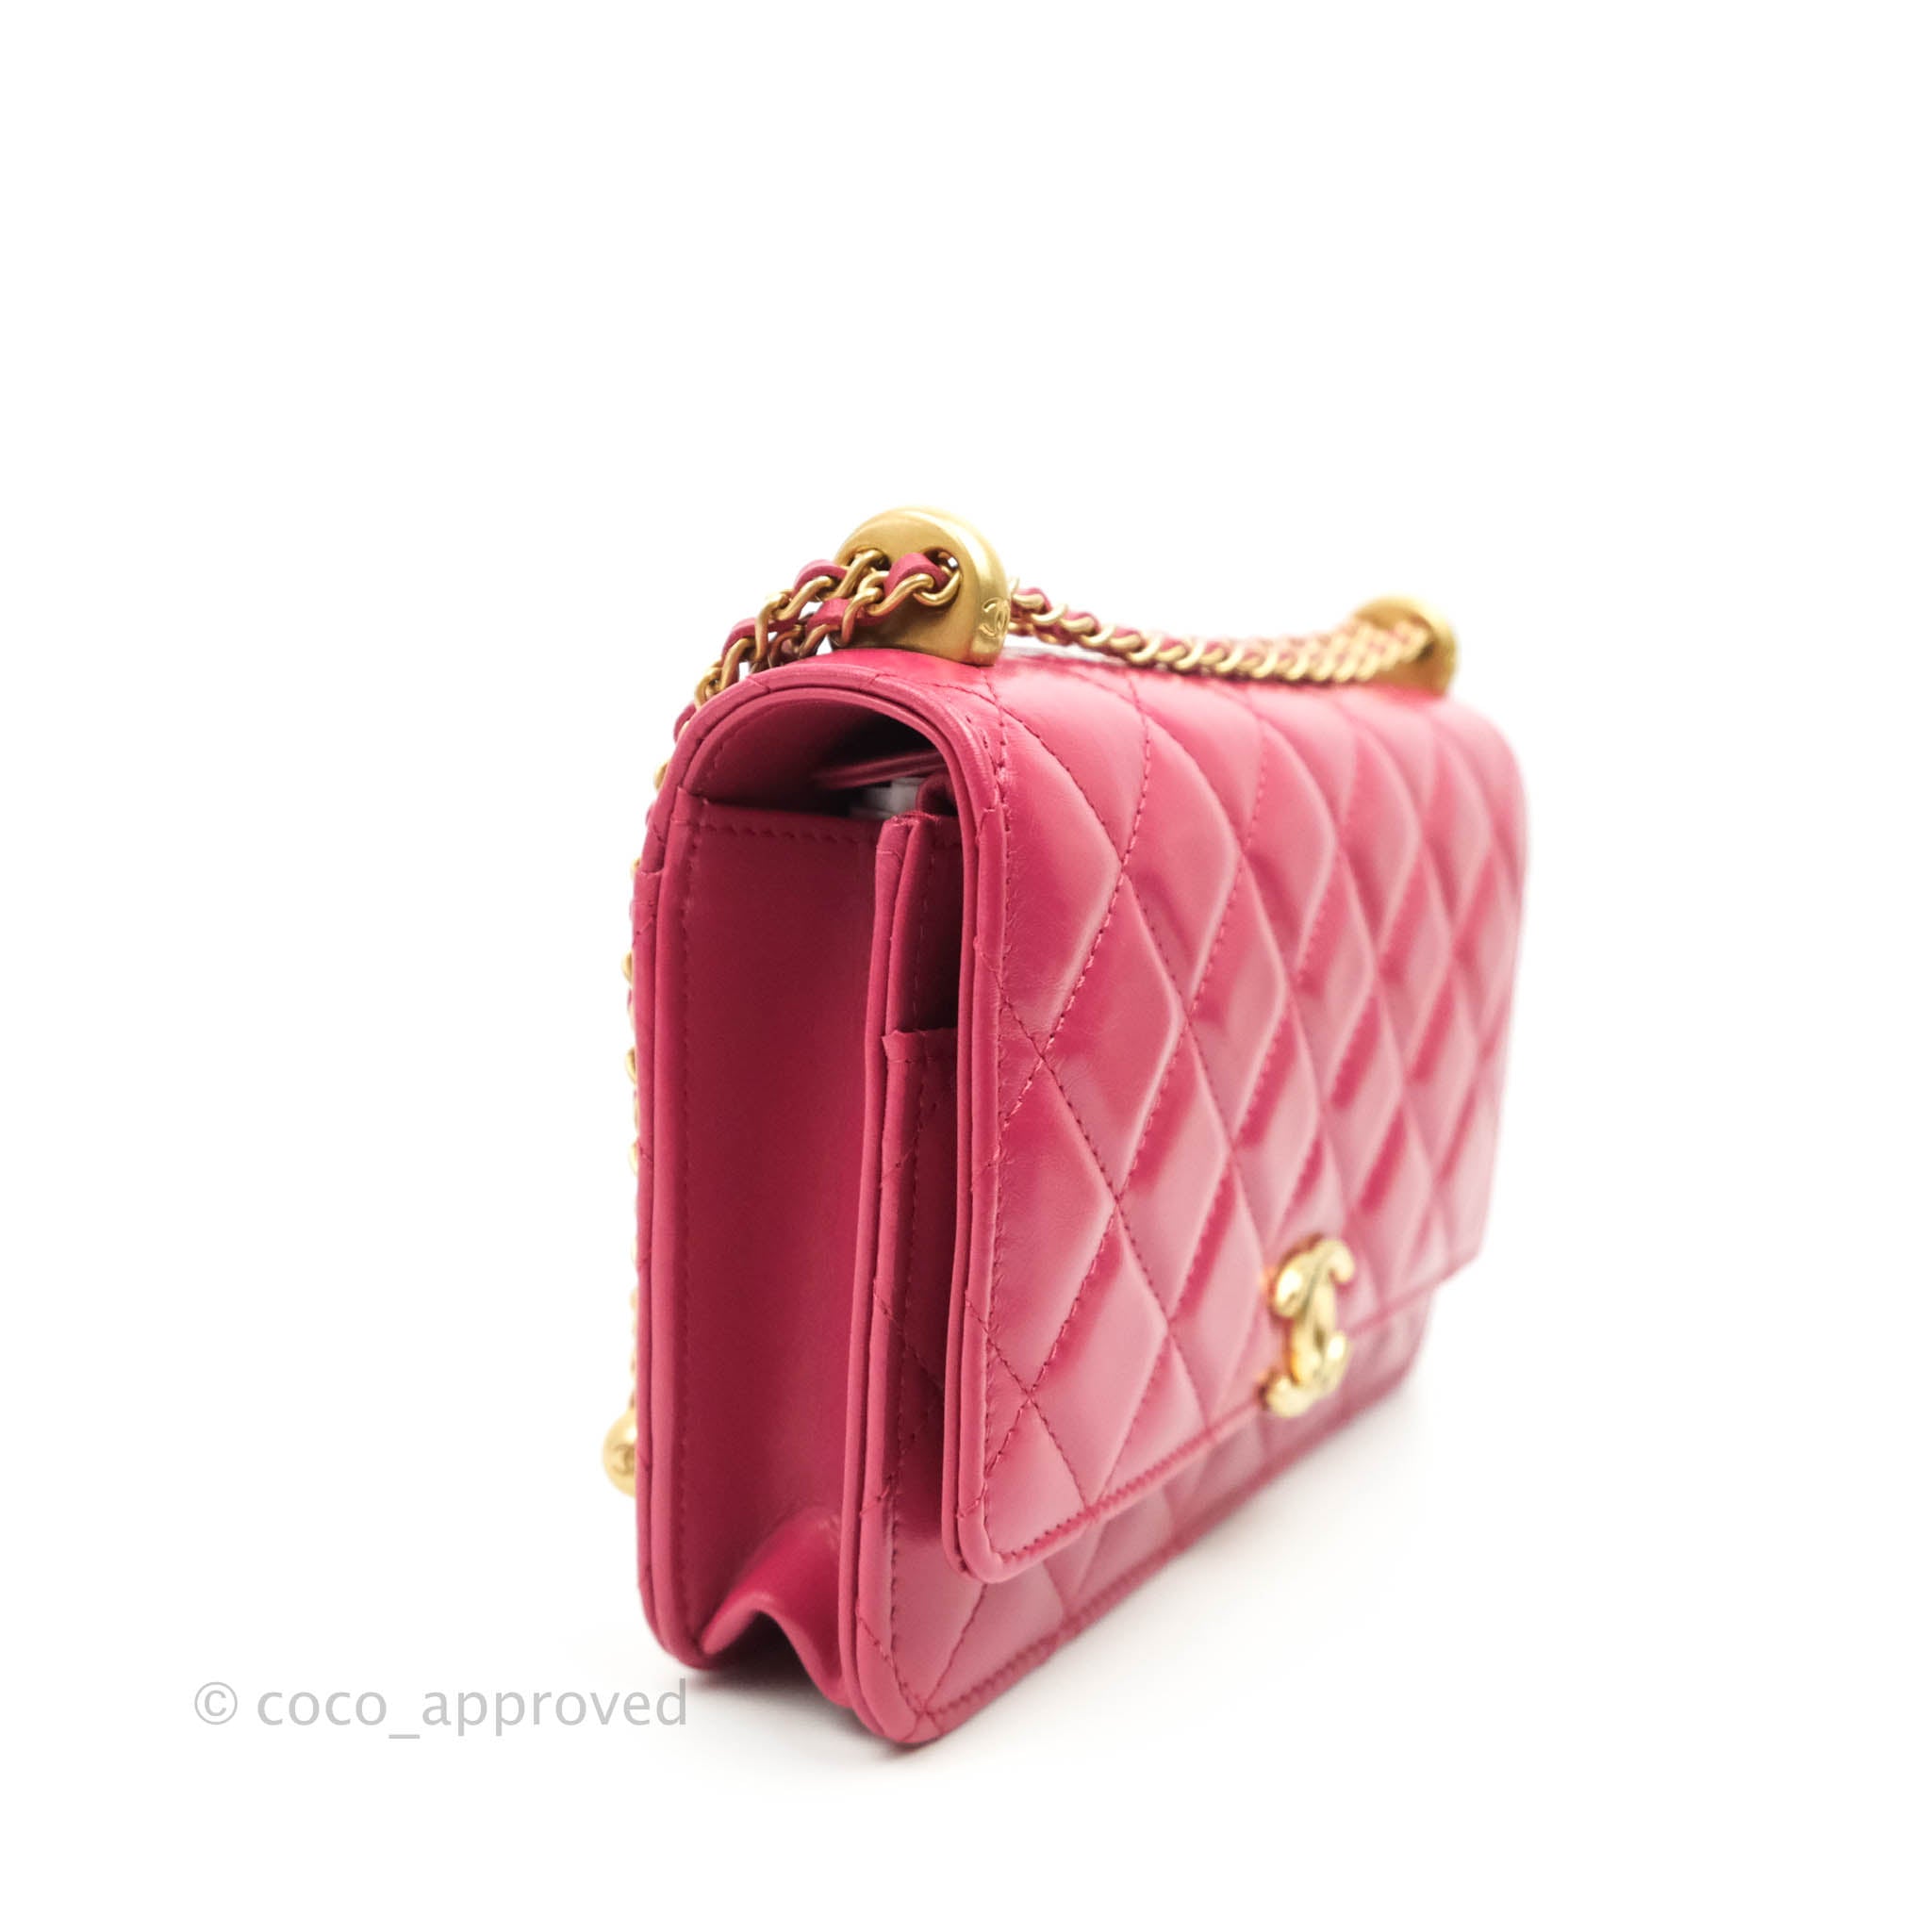 Chanel Women's Pink Wallets & Card Holders